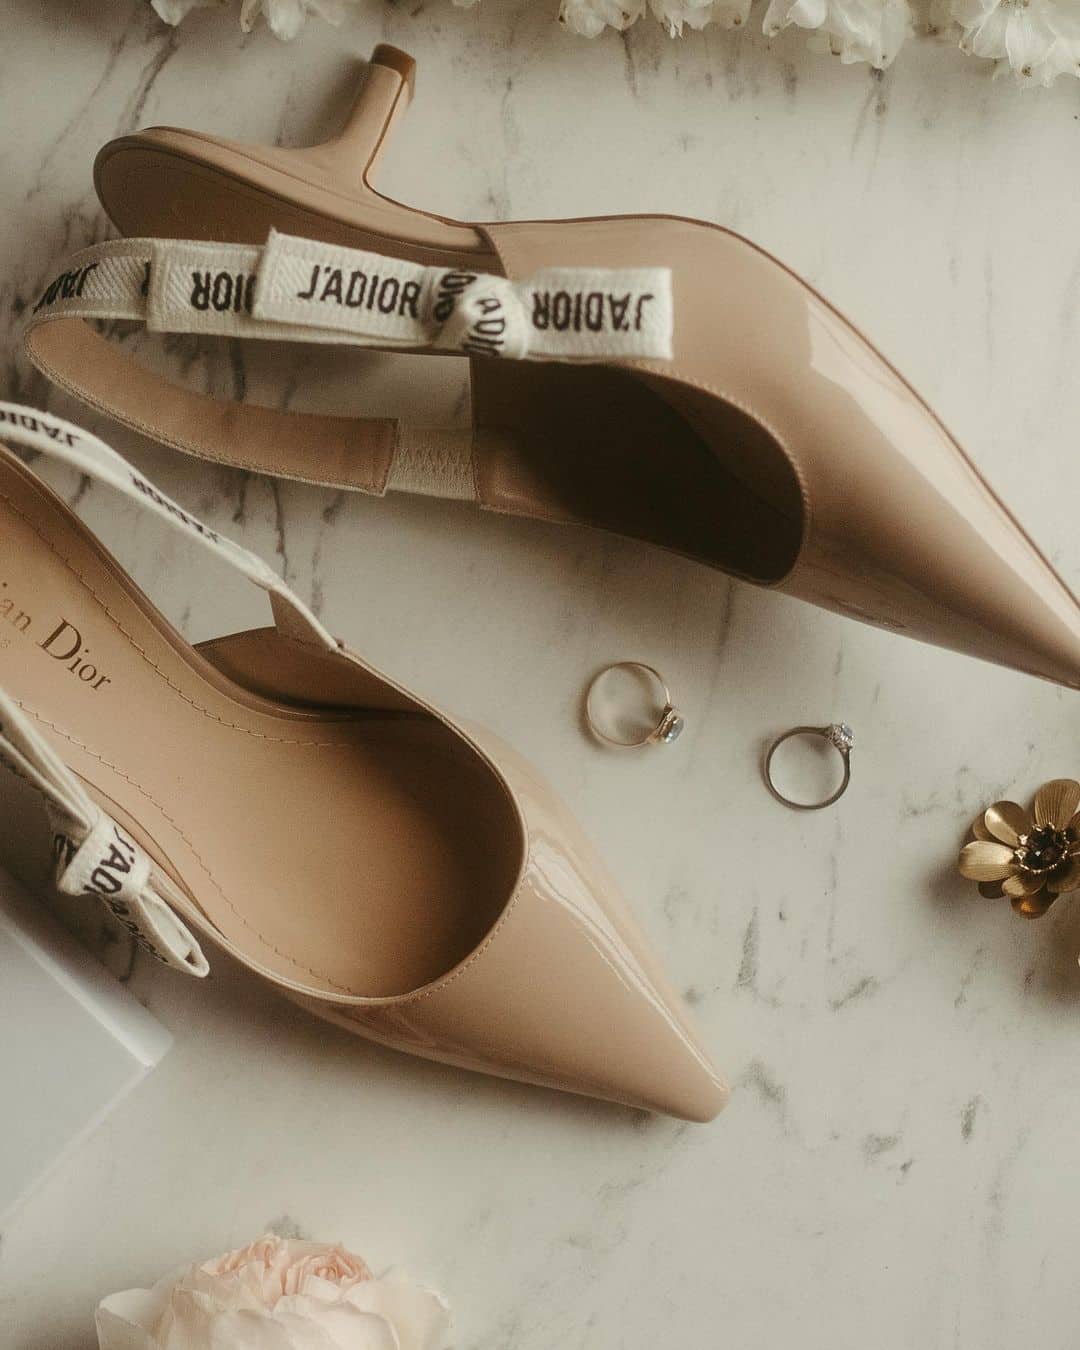 Zapatos de novia de piel acharolada modelo J'Adior de Dior con tacón en forma de coma y lazo decorativo